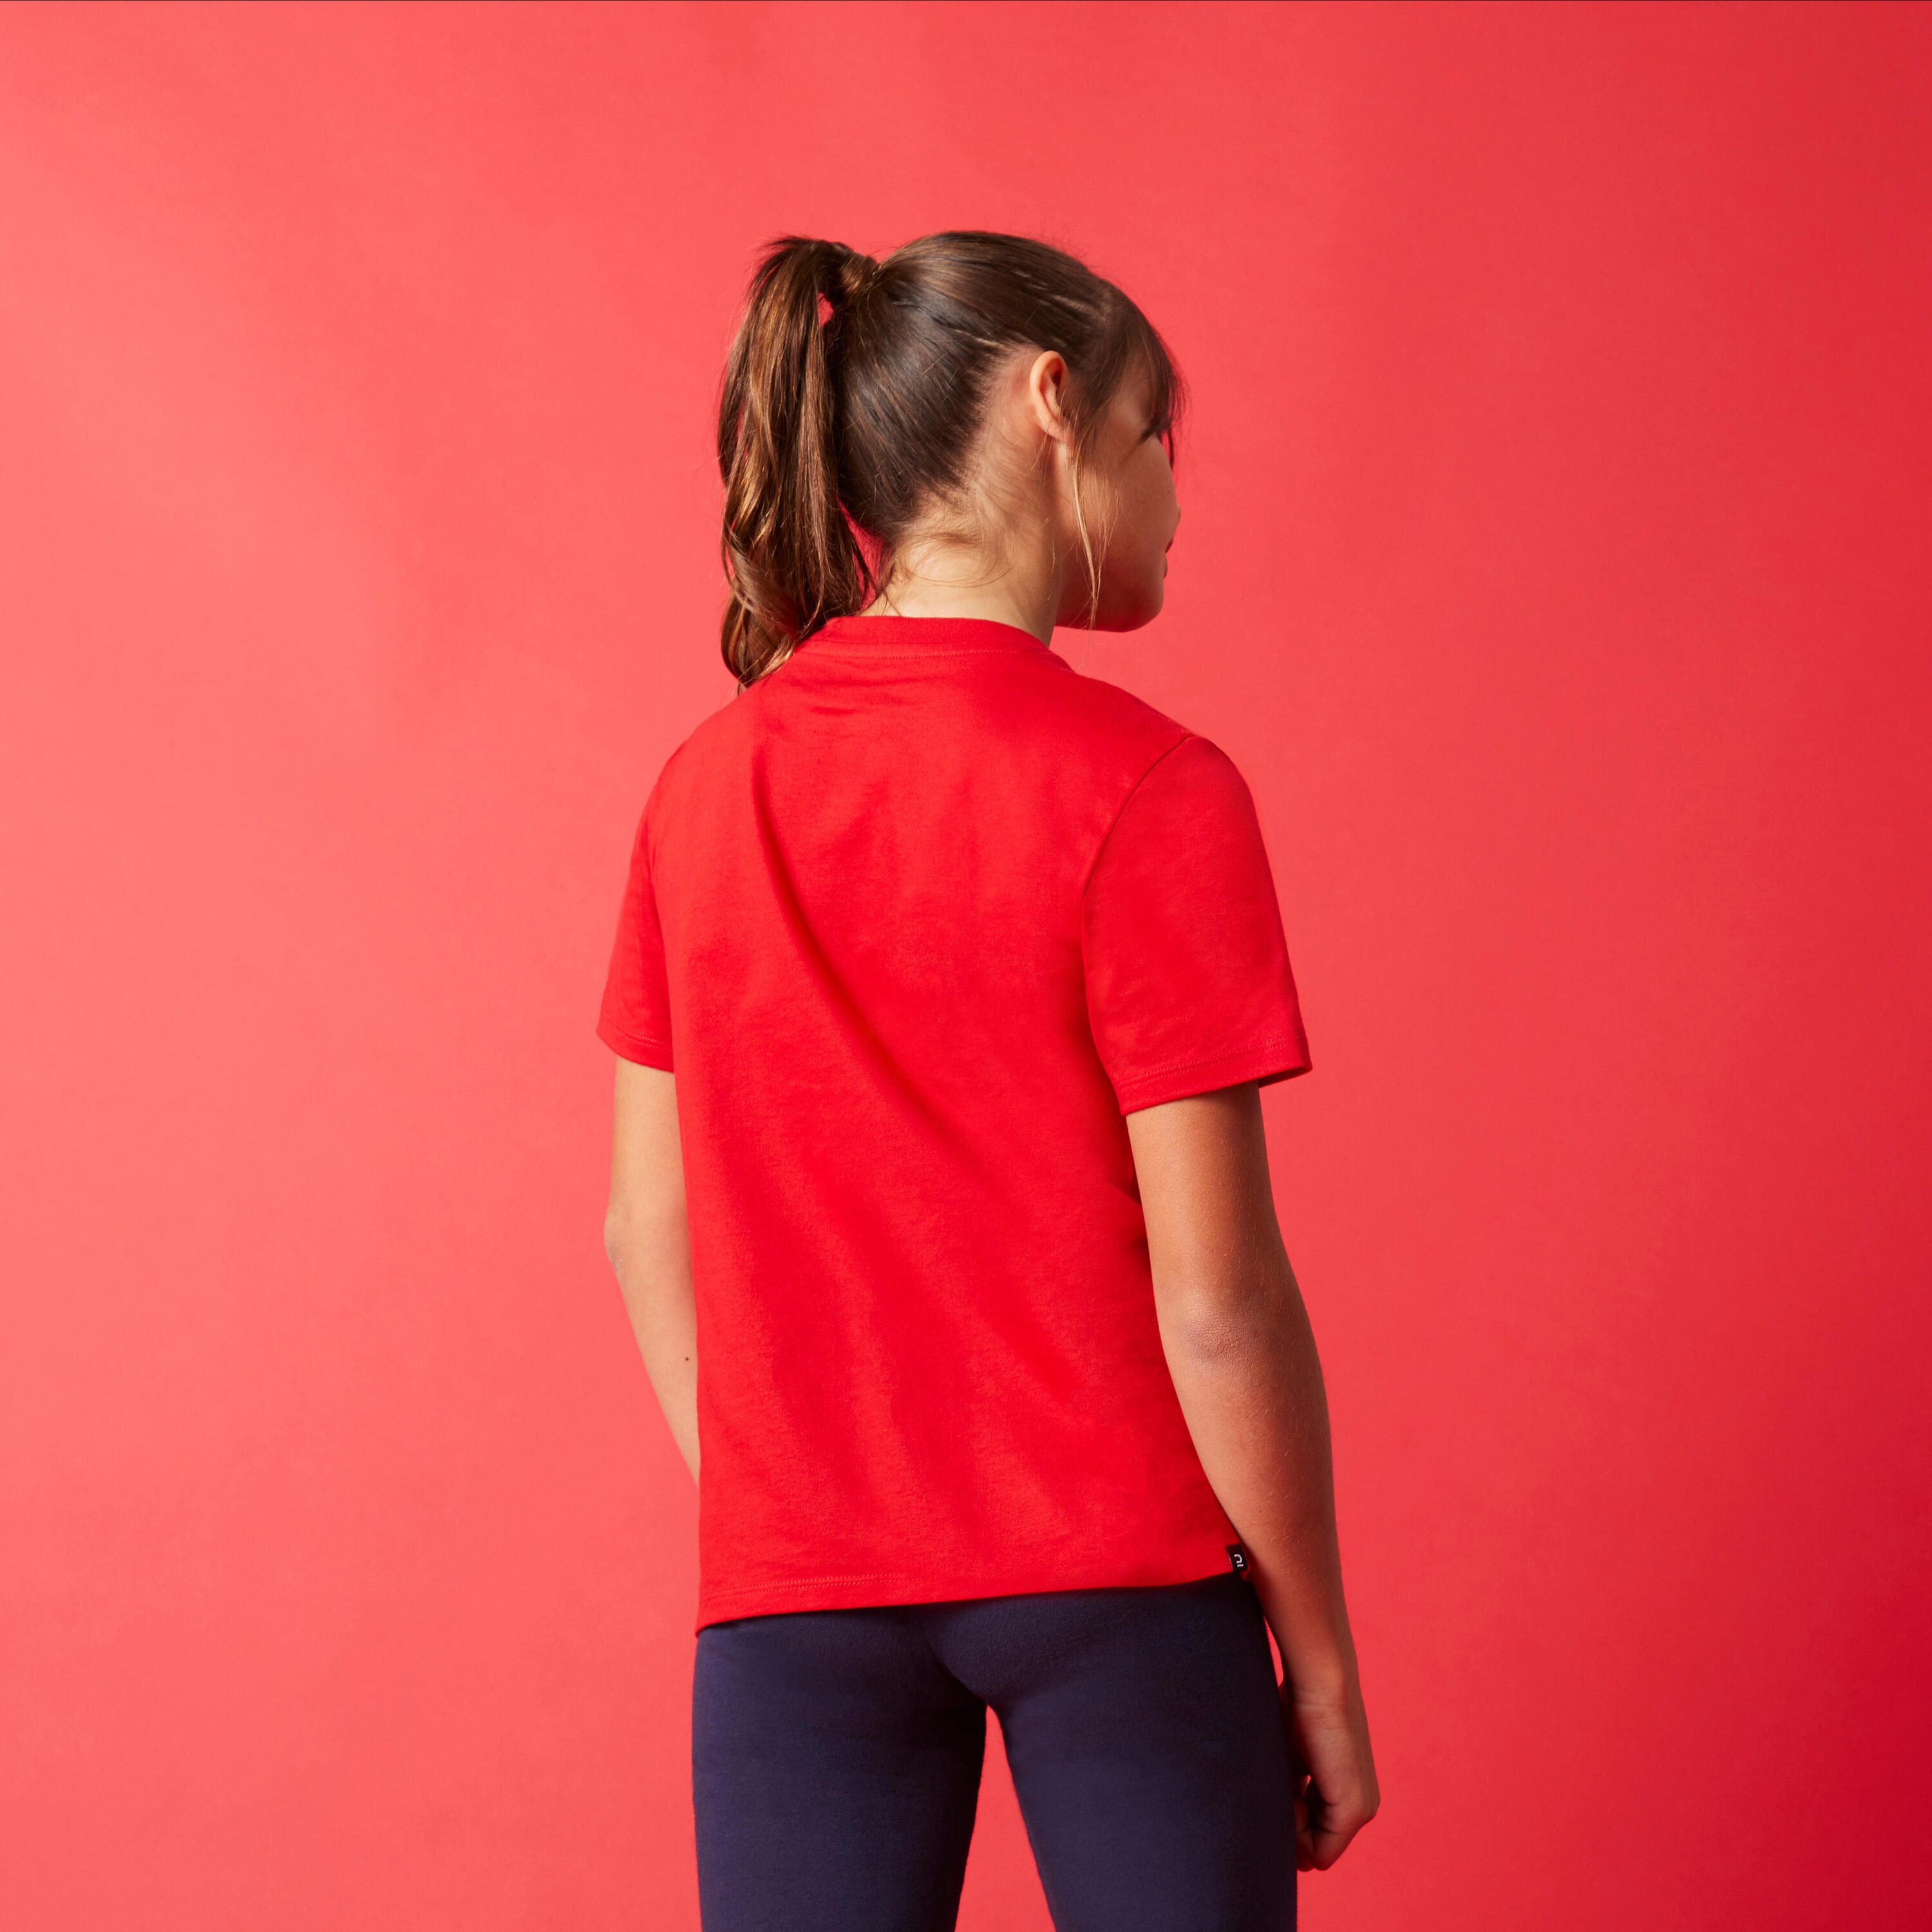 Kids' Unisex Eco-Designed Cotton T-Shirt - Plain 2/7